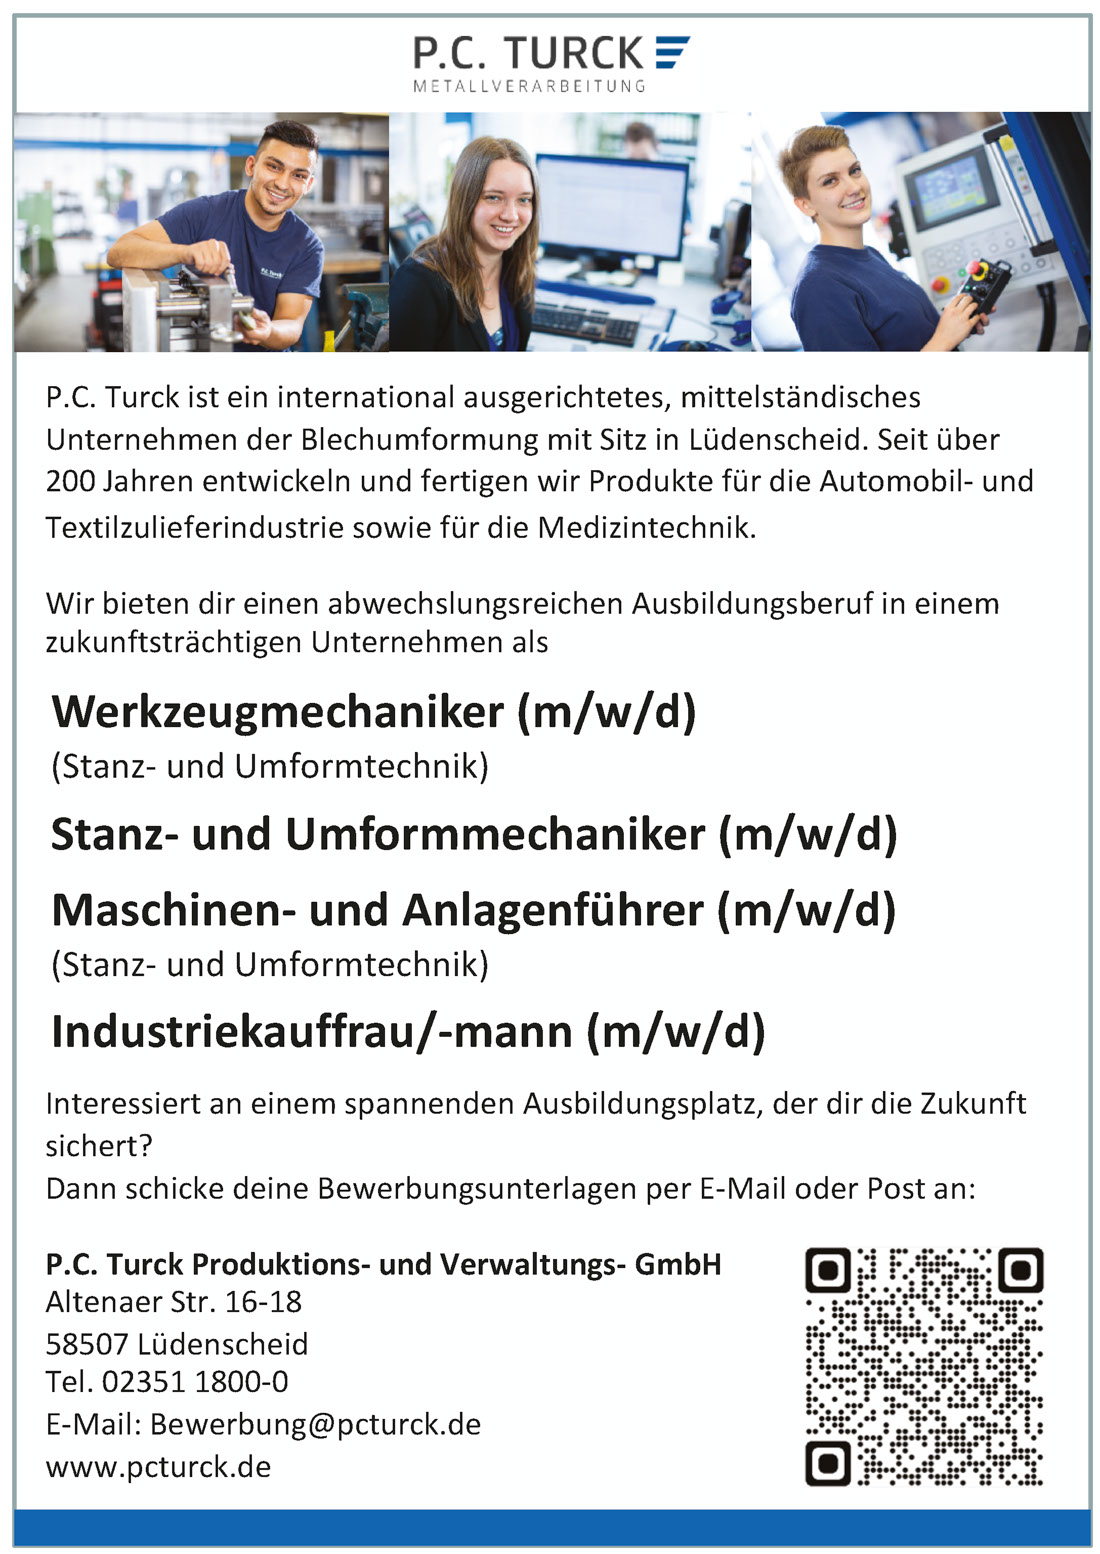 P.C. Turck Produktions- und Verwaltungs GmbH